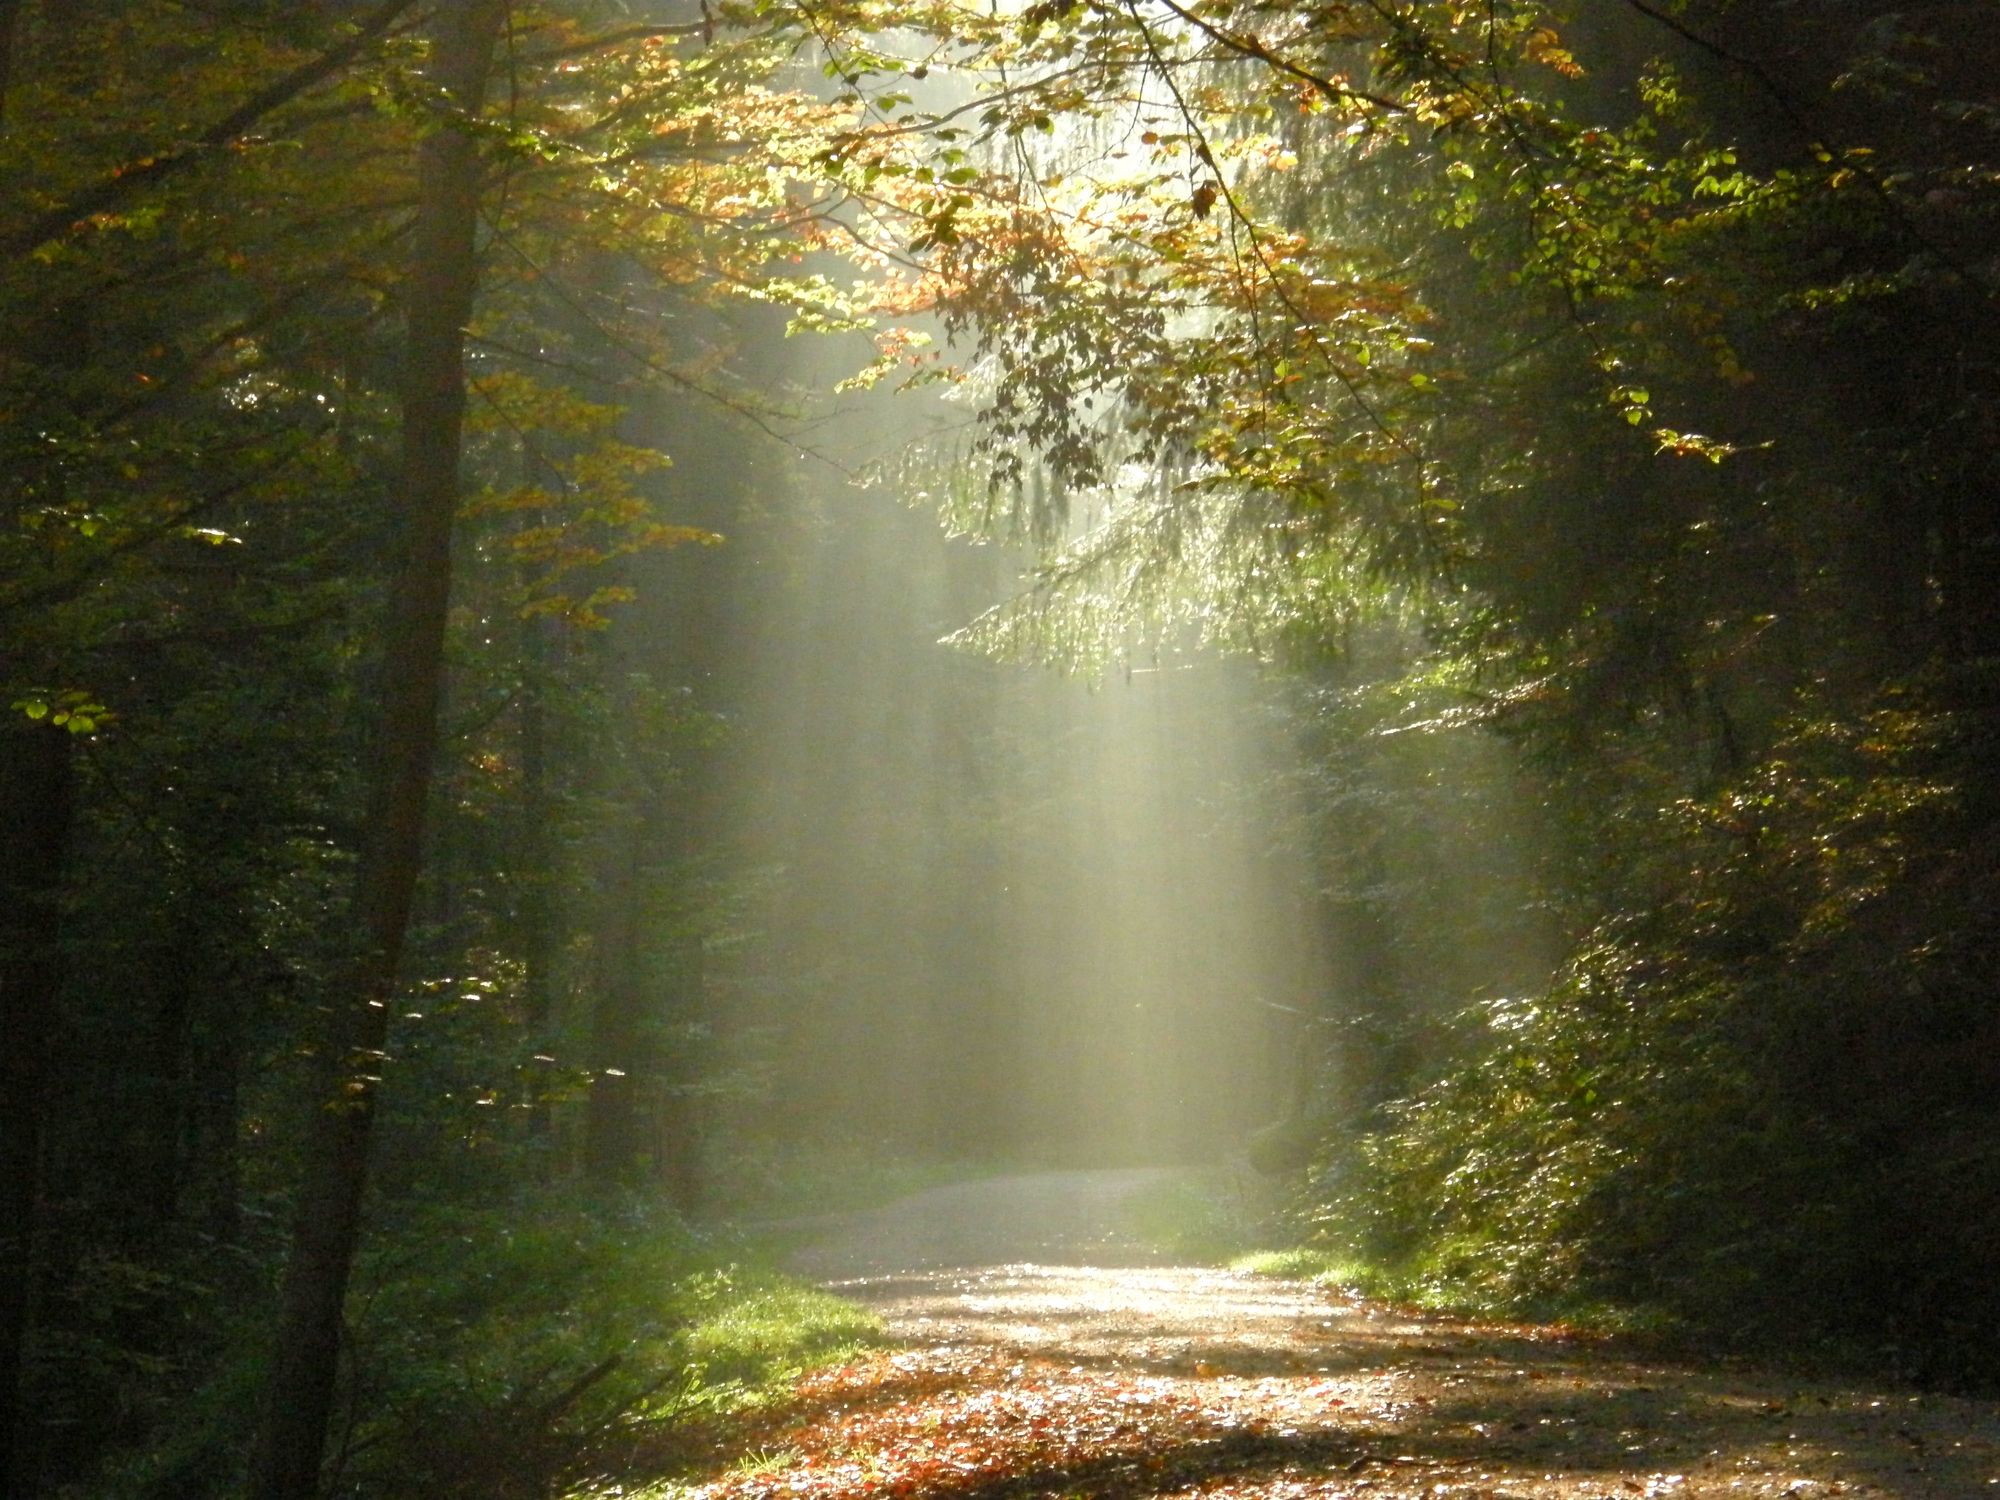 Bild mit Natur, Wälder, Wege, Wald, Lichtung, Weg, Spaziergang, Strahlen, spaziergänge